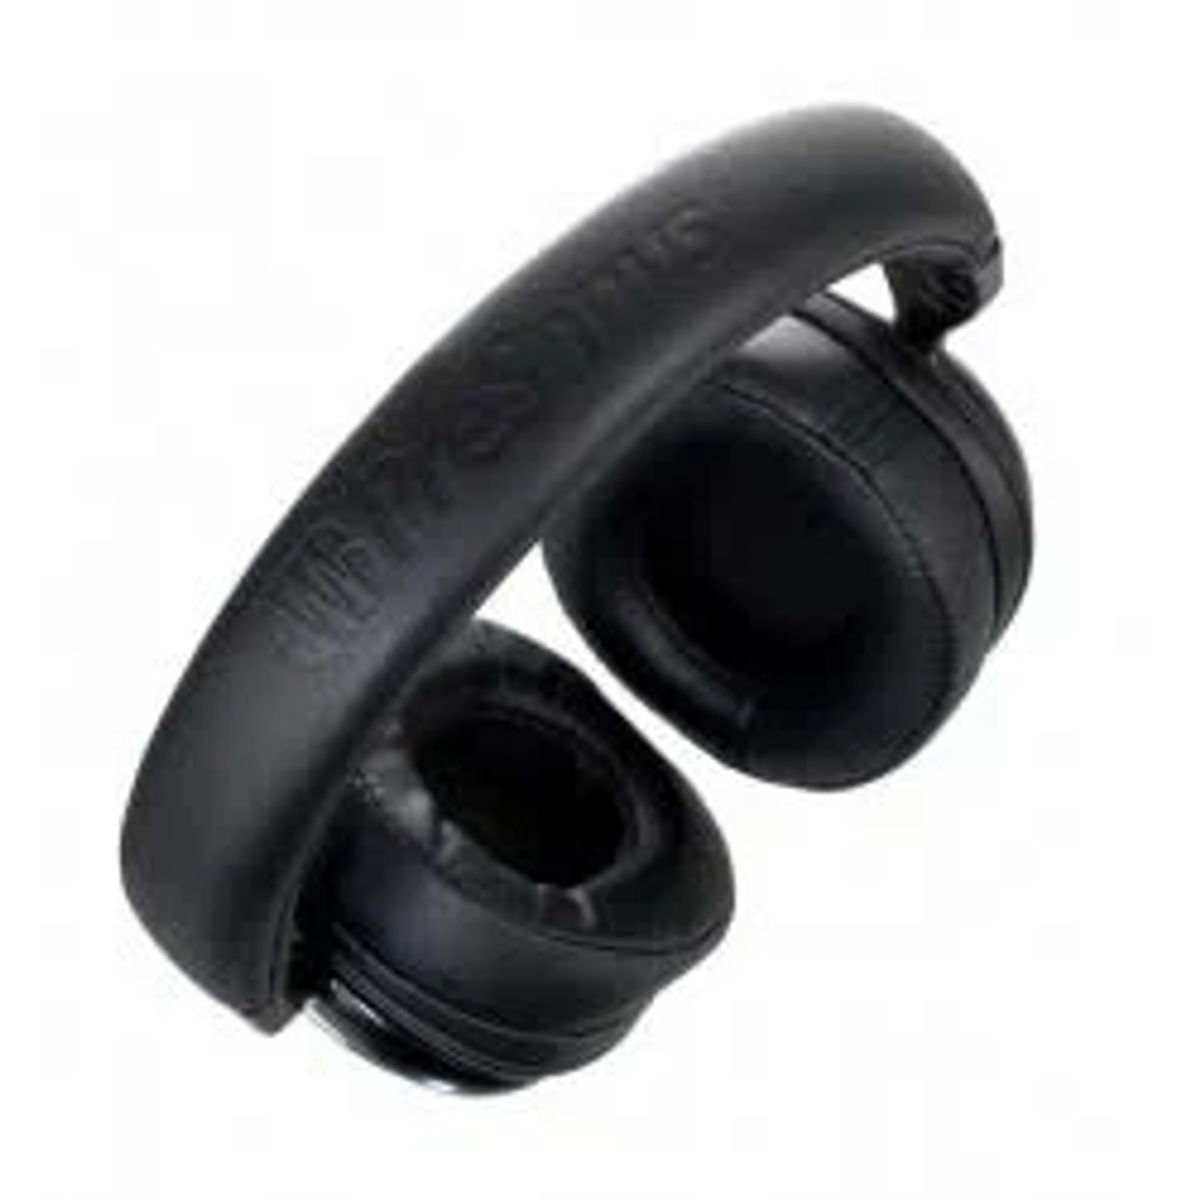 PRESONUS HD10BT, Bluetooth Kopfhörer Schwarz Over-ear